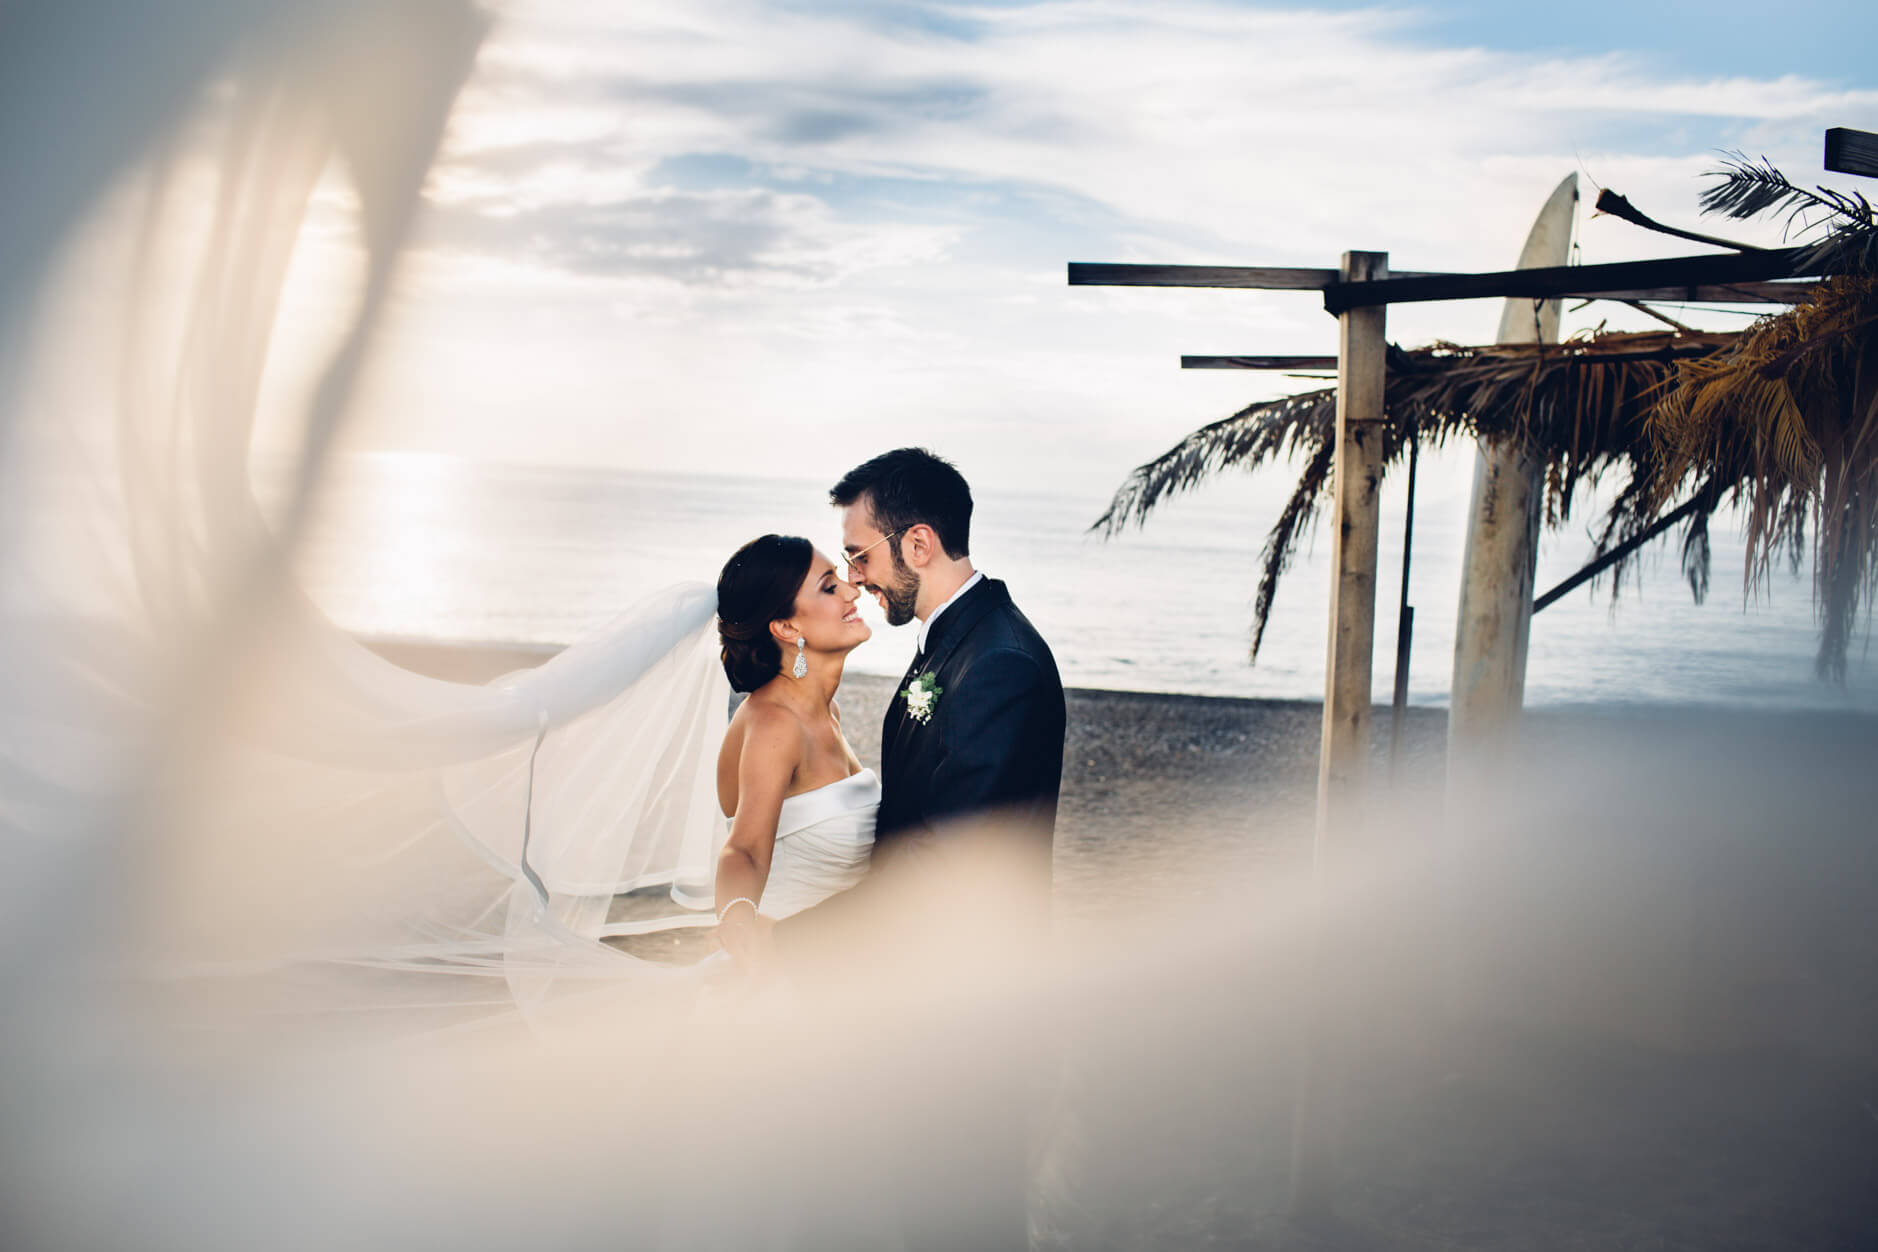 Civile matrimonio in spiaggia: romanticismo e libertà sotto il sole